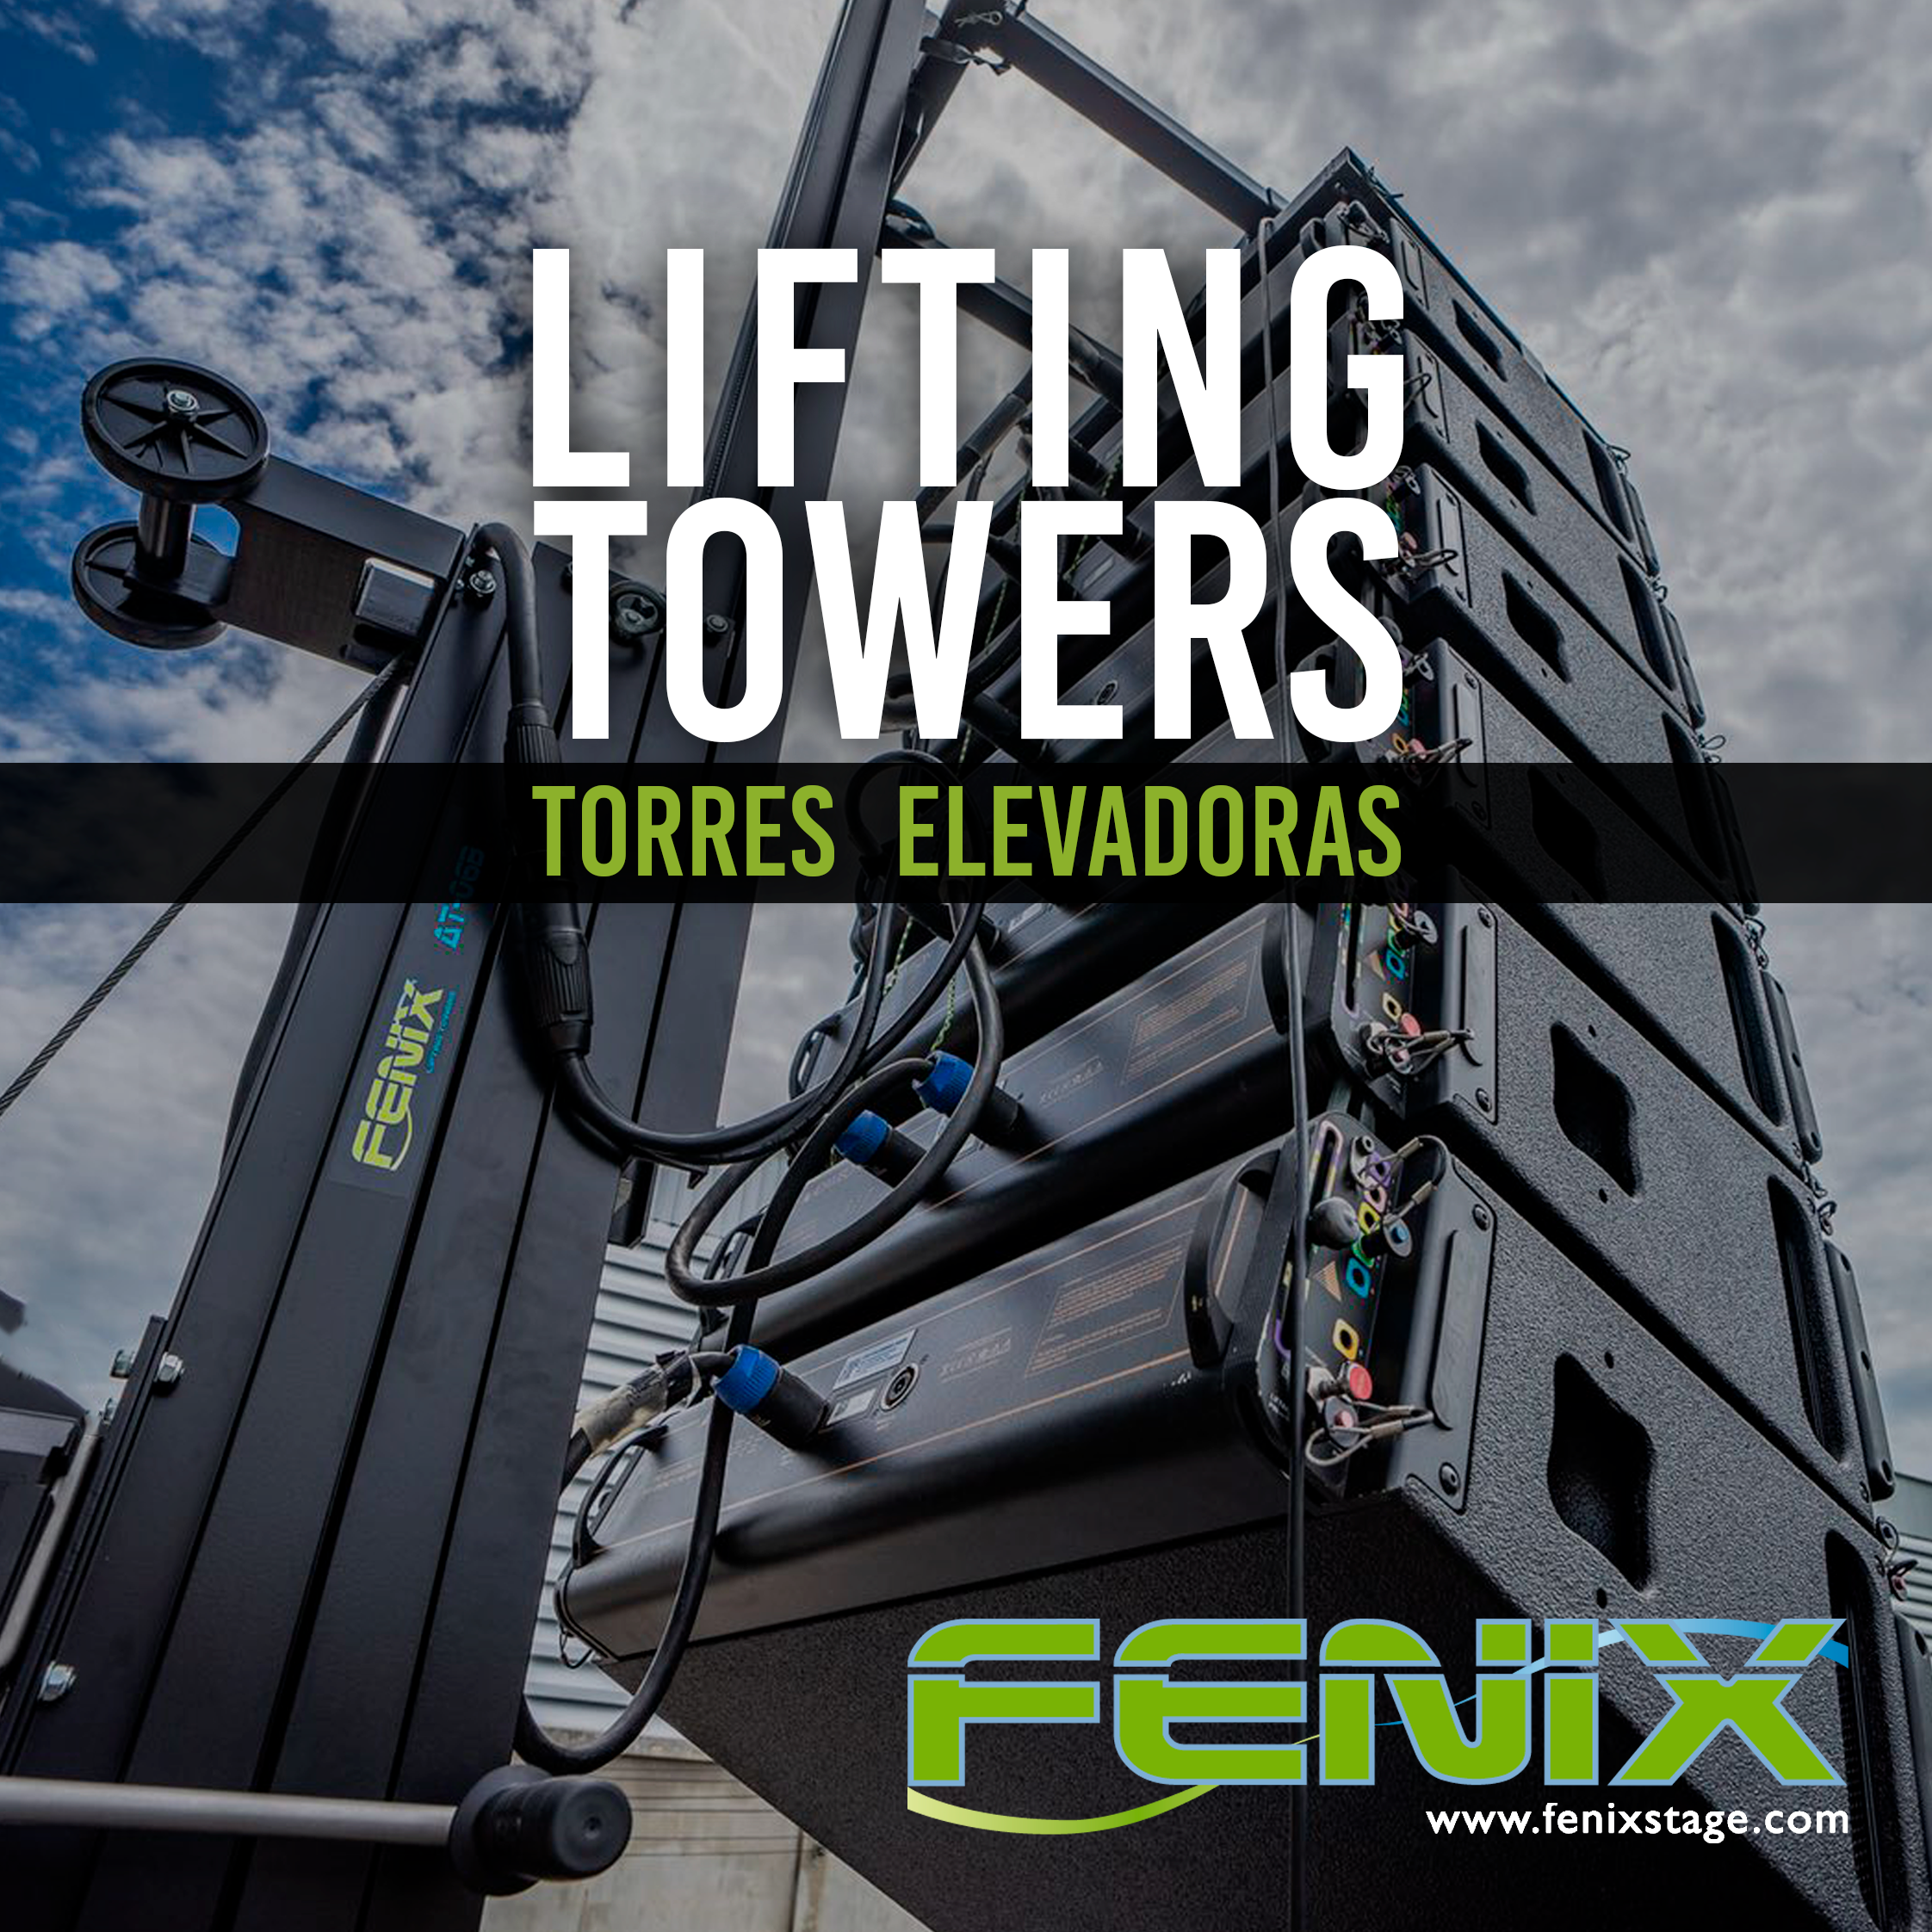 Lifting towers catalogue 2015